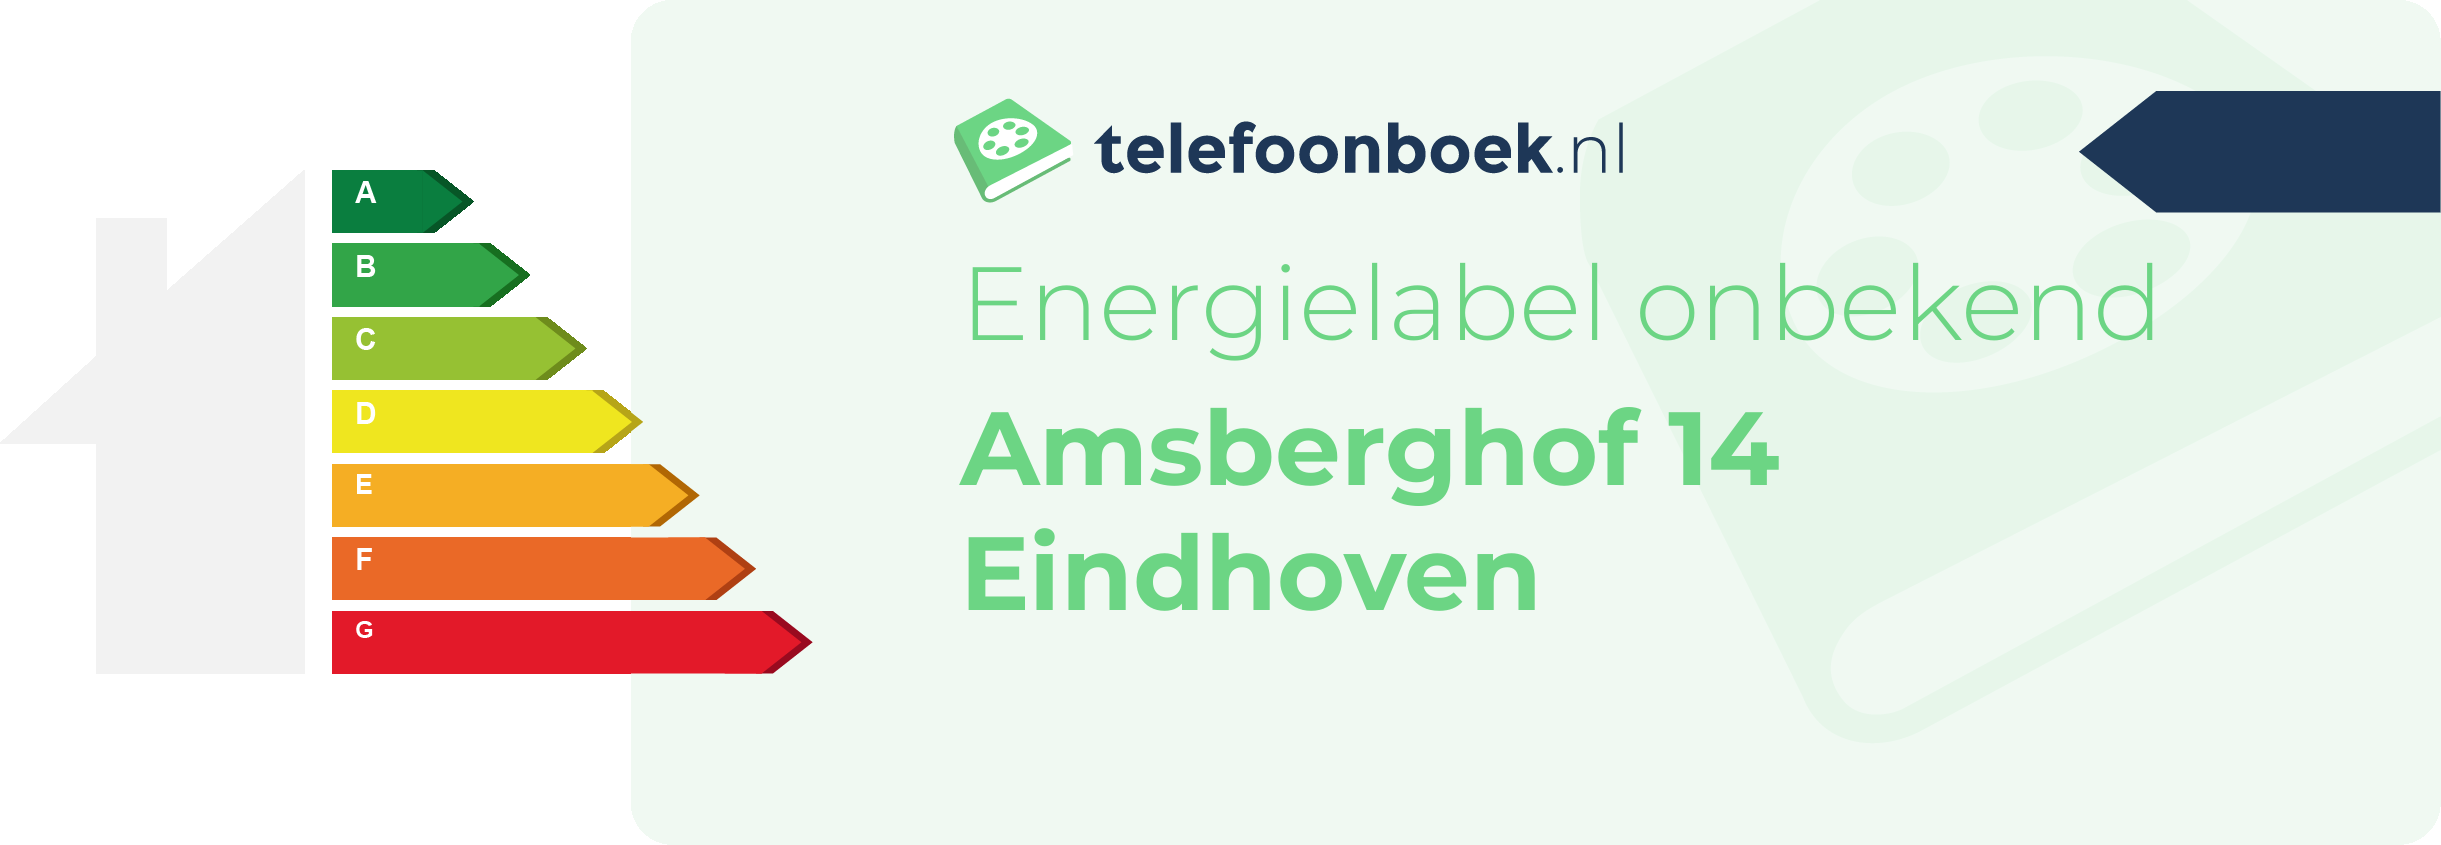 Energielabel Amsberghof 14 Eindhoven